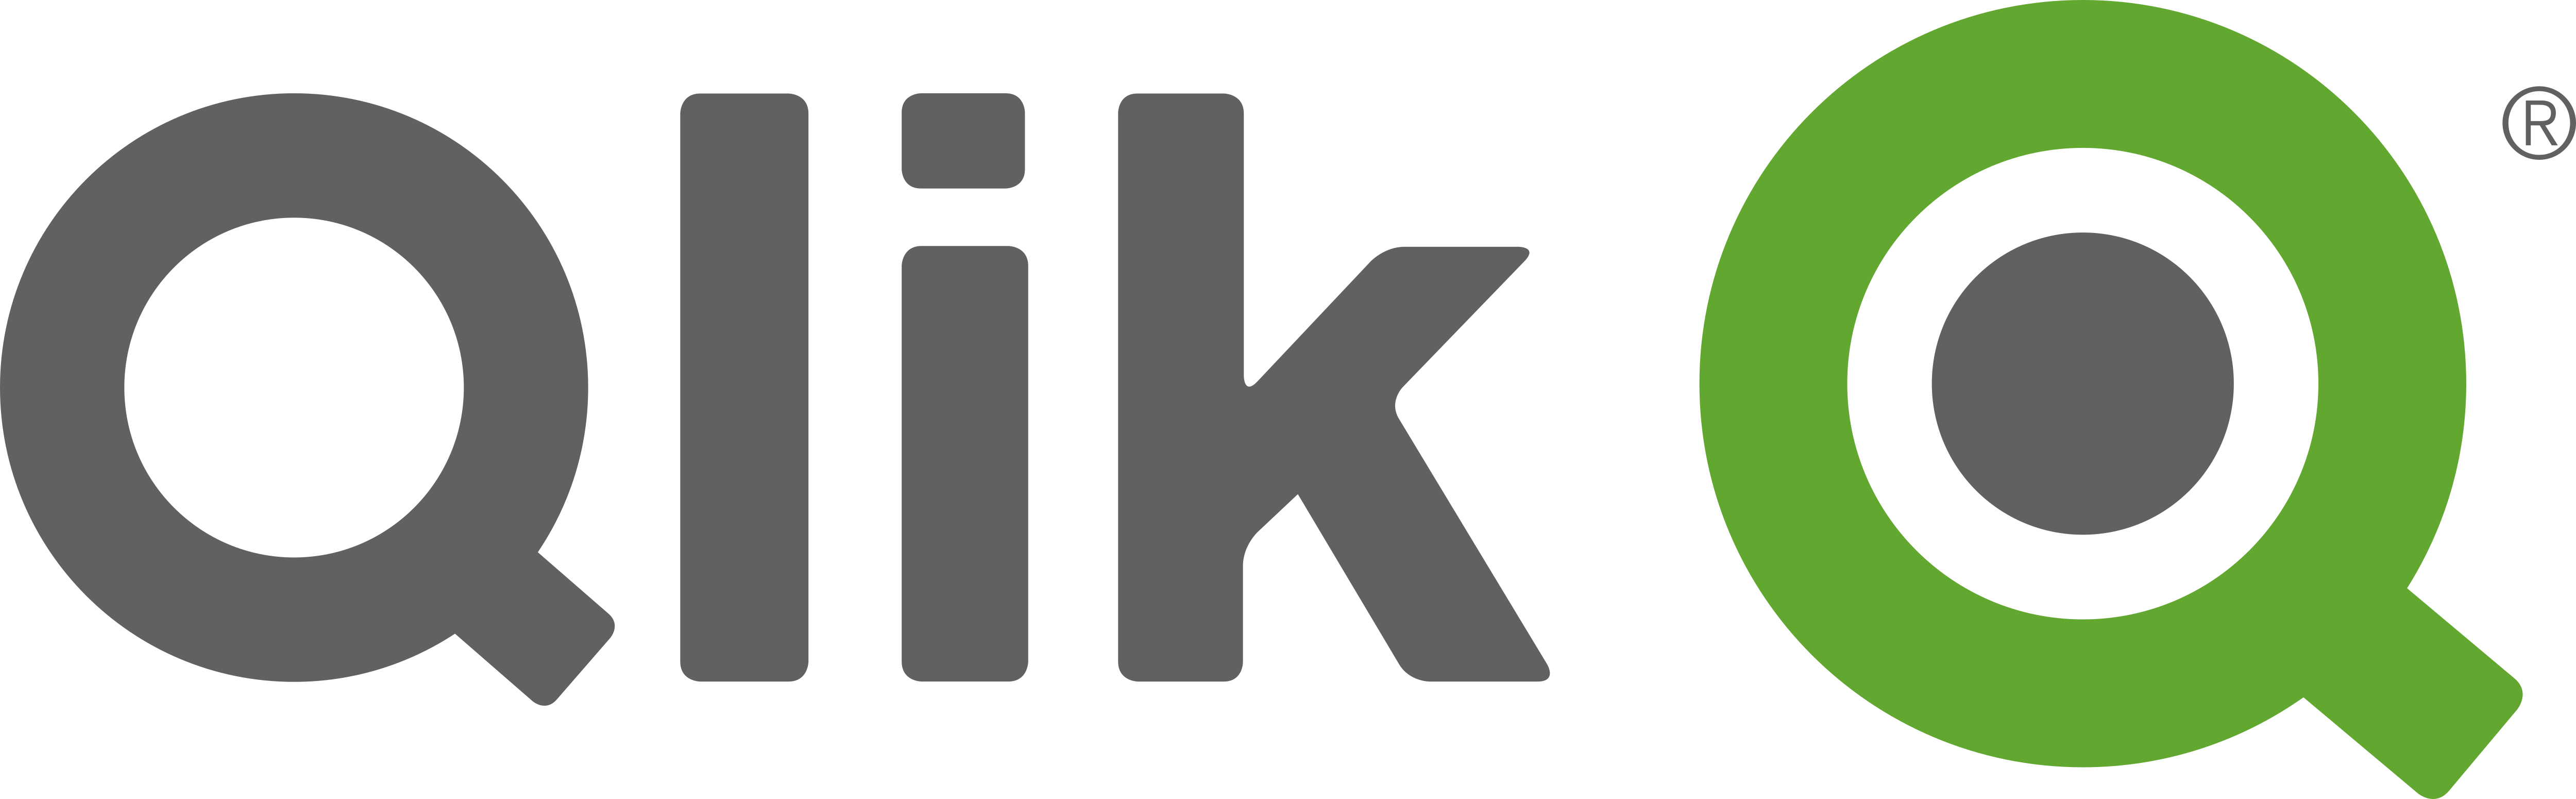 Logo Qlik ETL & Data Integration tools